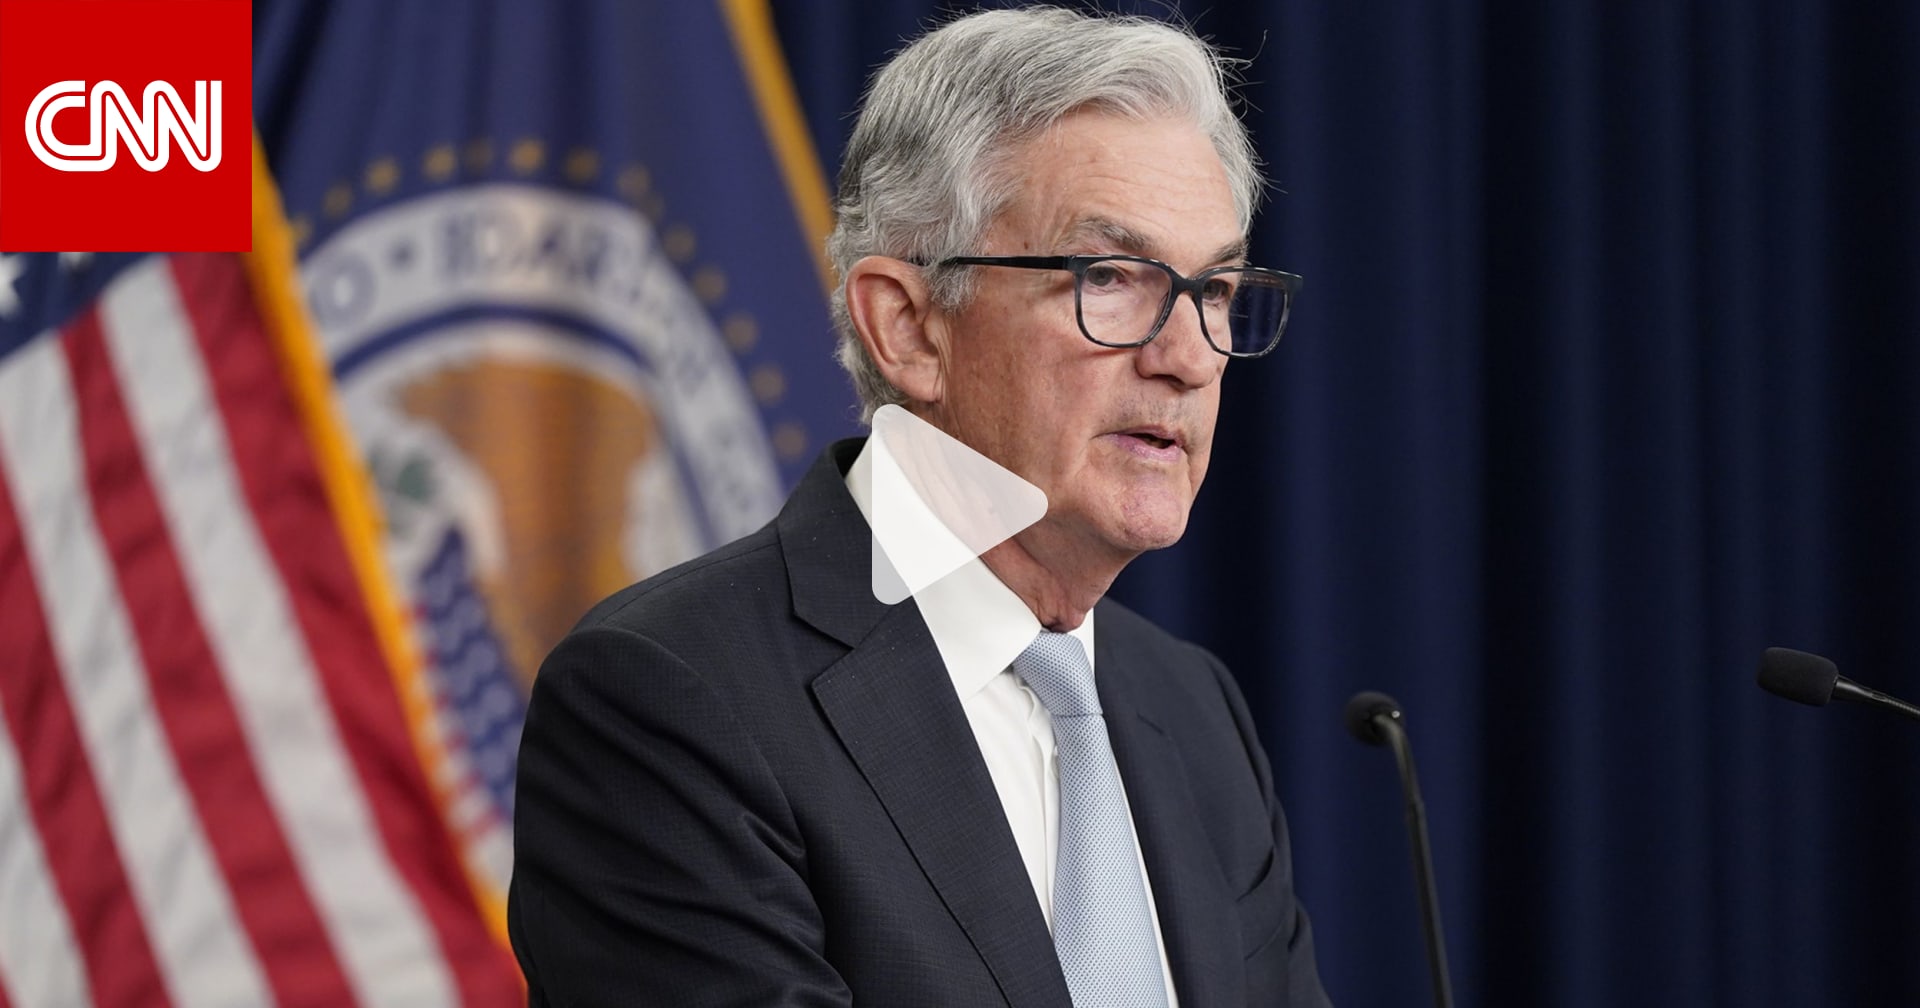 "وقت تخفيف معدّلات الفائدة قادم".. رئيس الاحتياطي الفيدرالي يؤكد الاستمرار "حتى الوصول إلى المستوى المناسب"